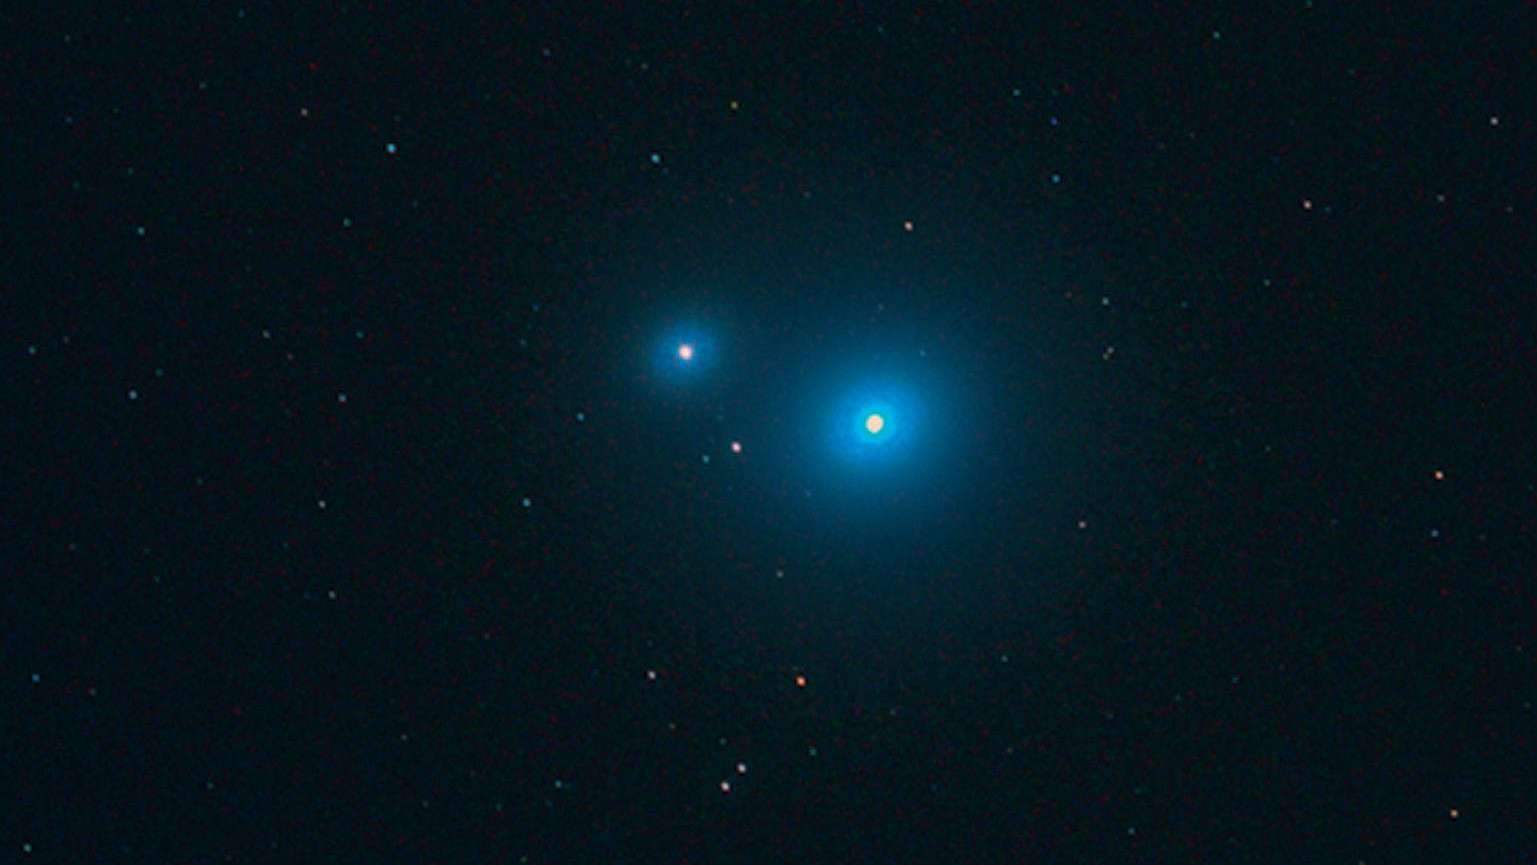 L’observateur qui peut détecter l’étoile Alcor (à gauche) a de bons yeux. Mizar elle-même est un système composé de deux binaires. Rolf Löhr